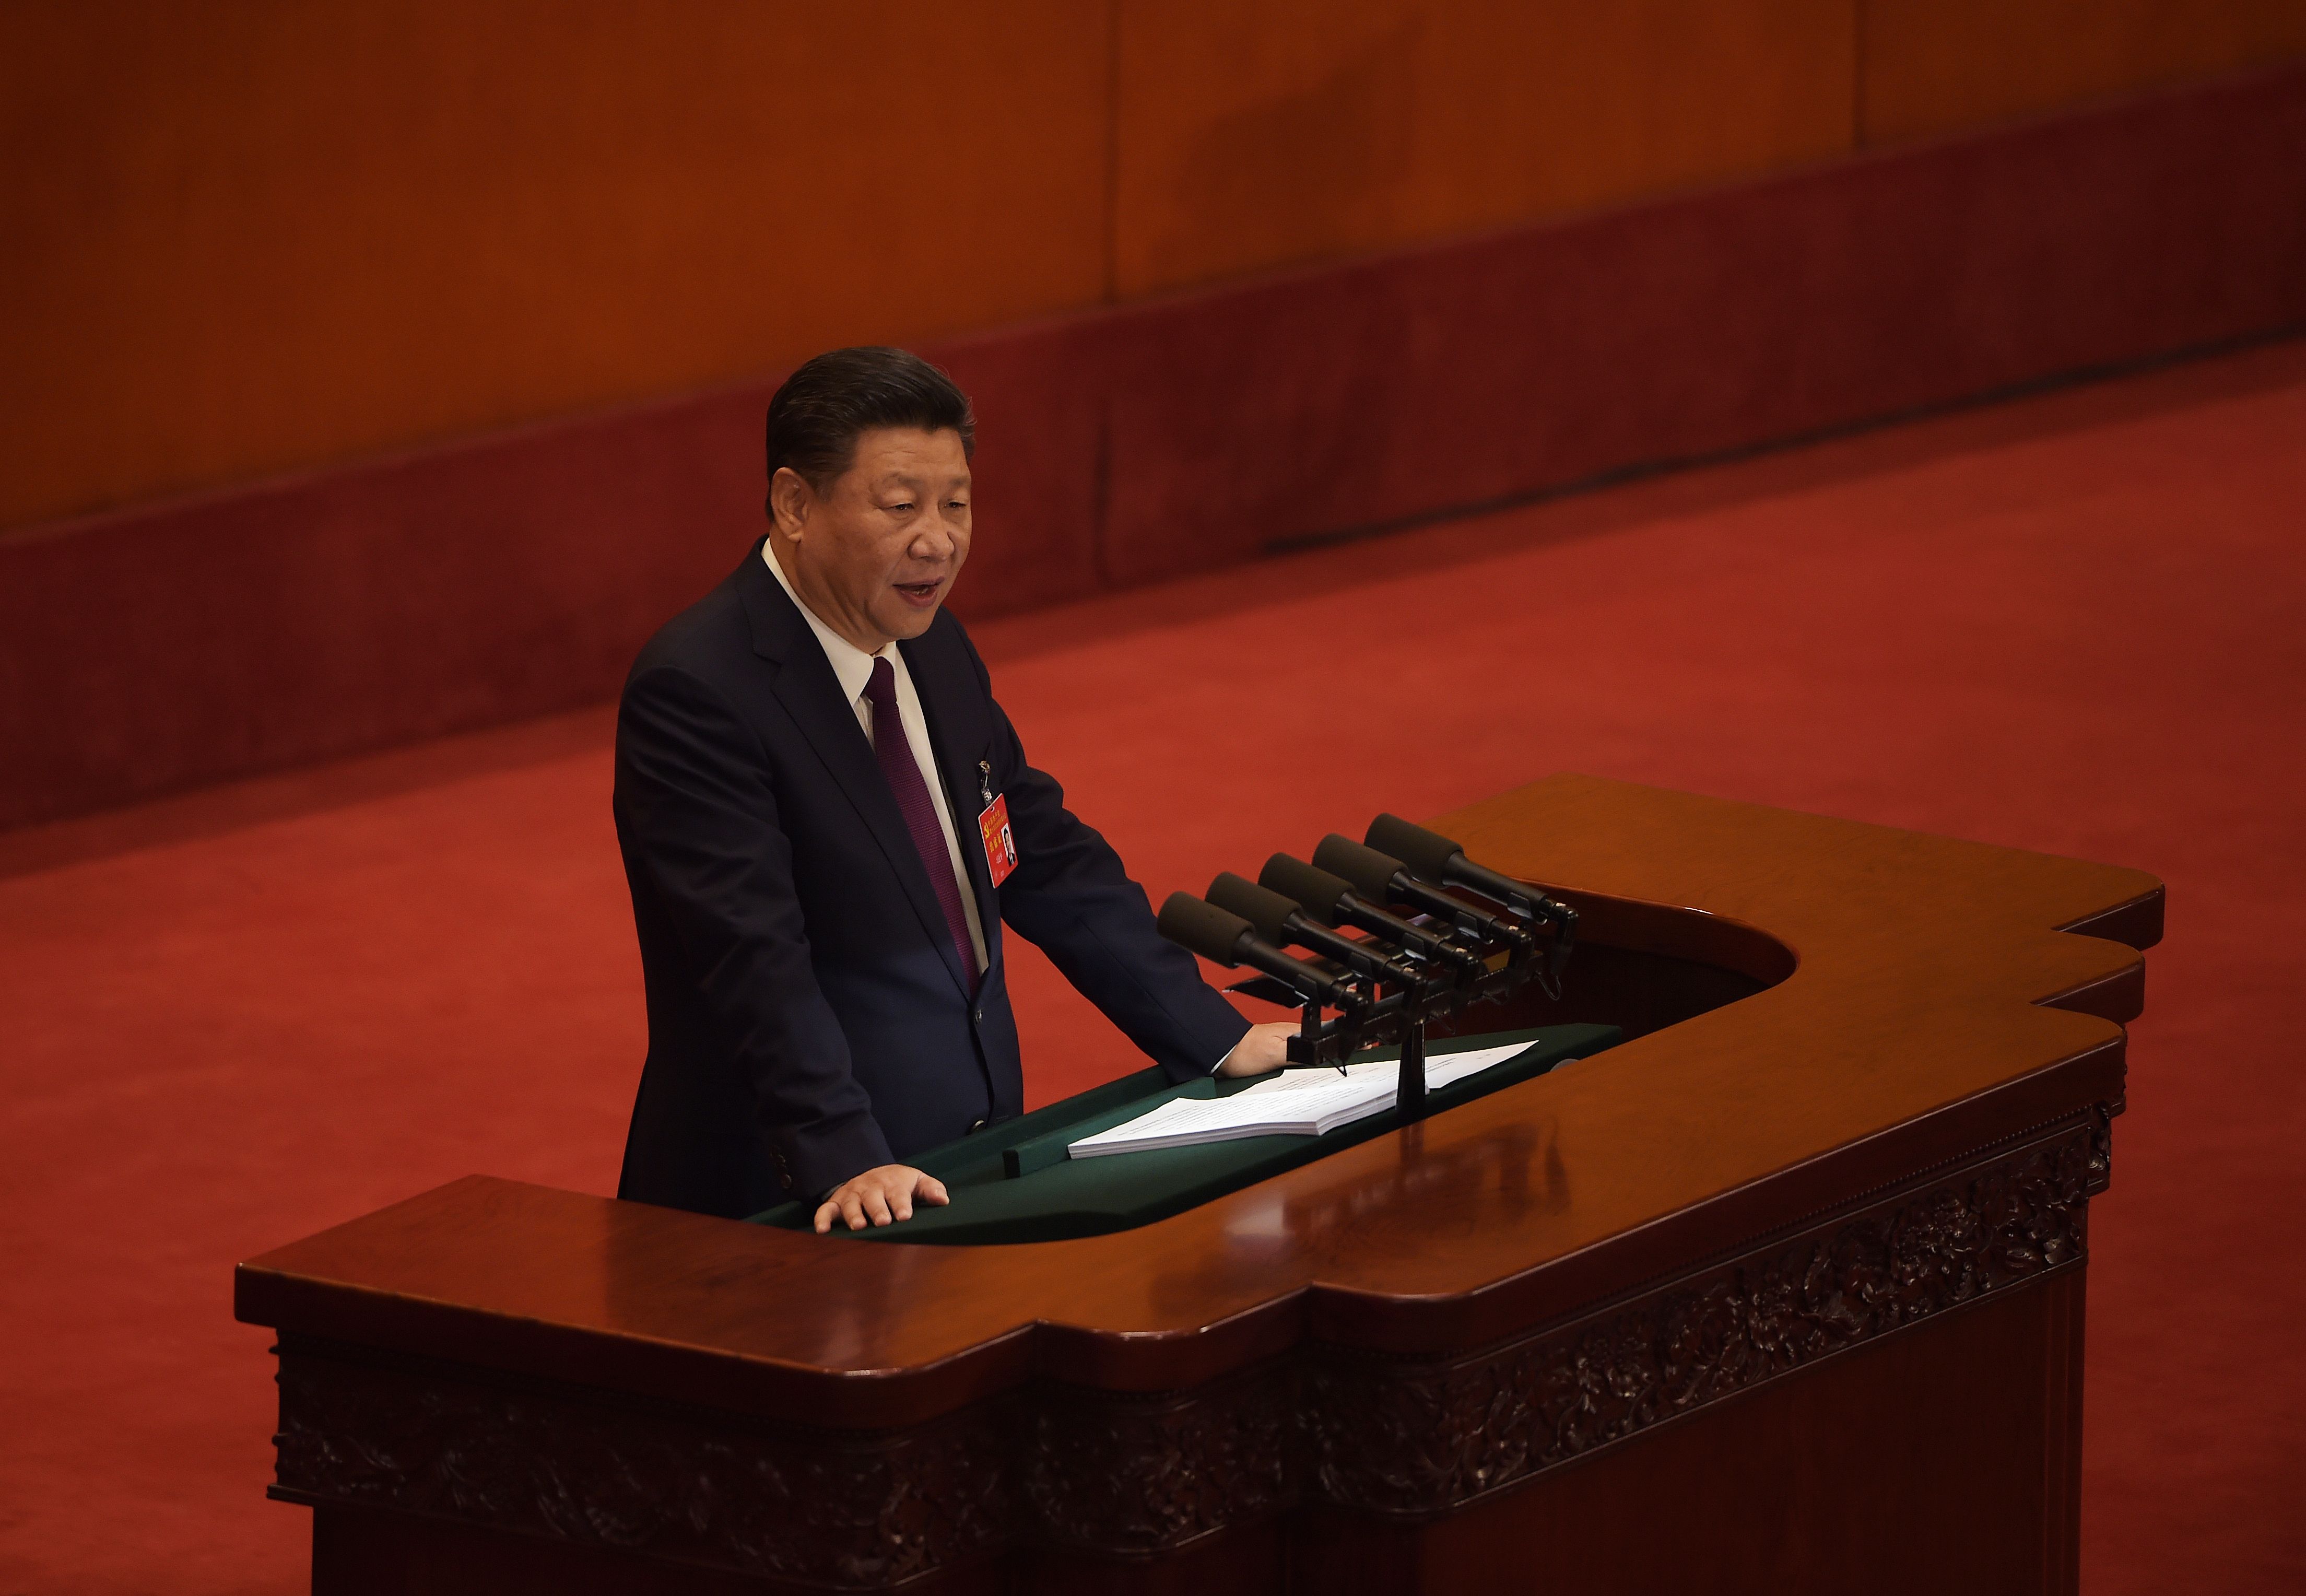 الرئيس الصيني شين جين بينج